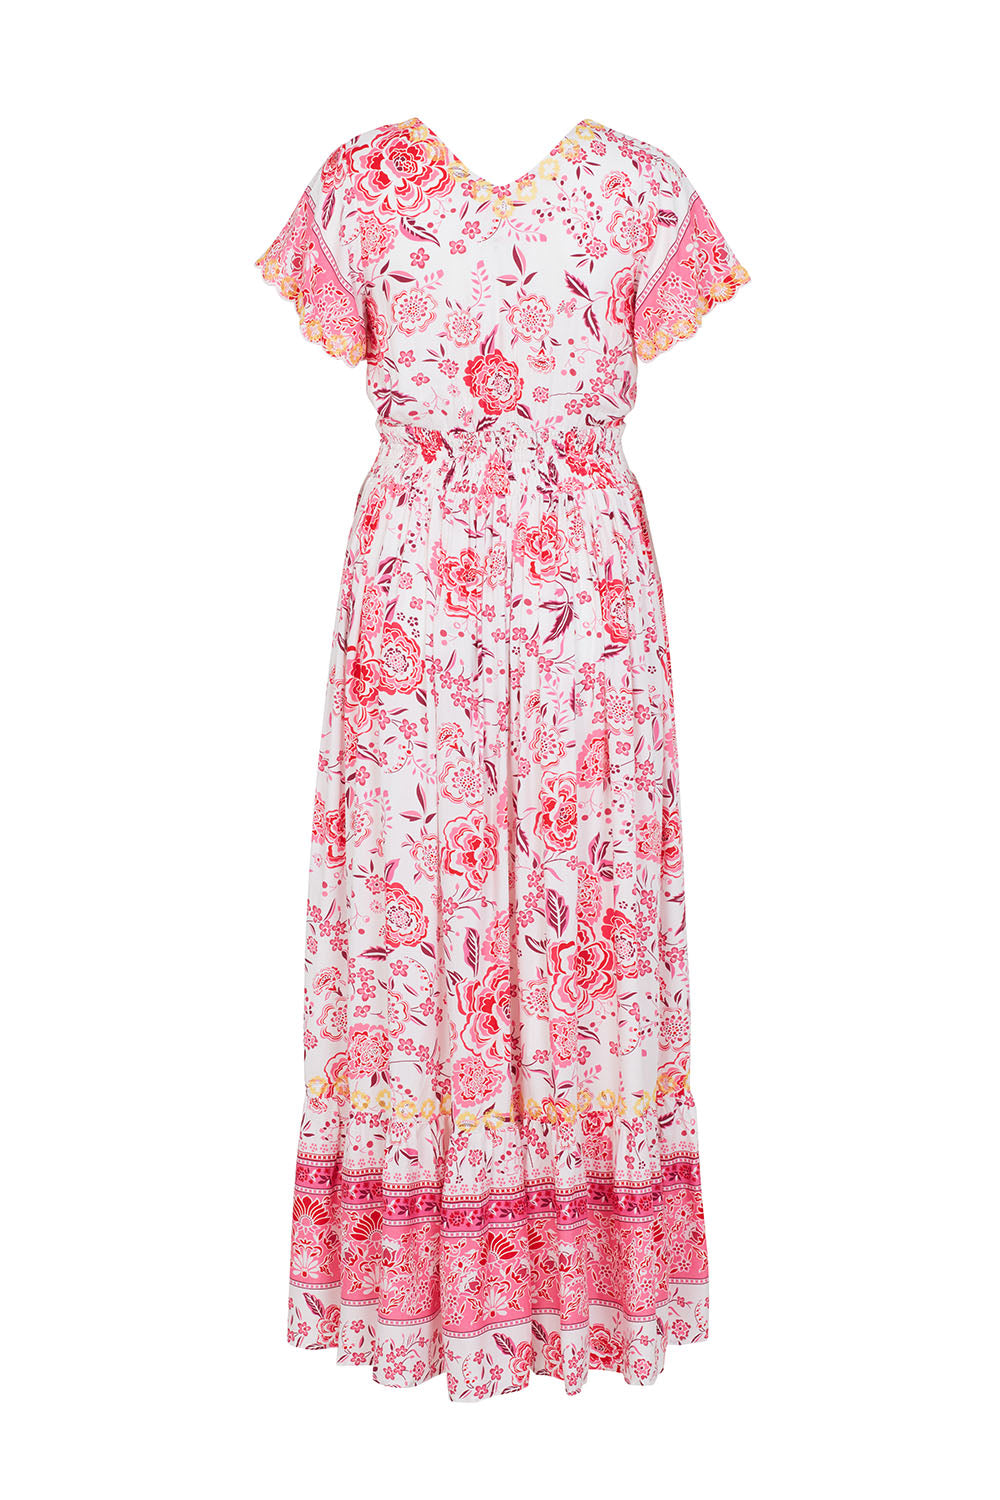 Positano dress in pink – sister design ltd